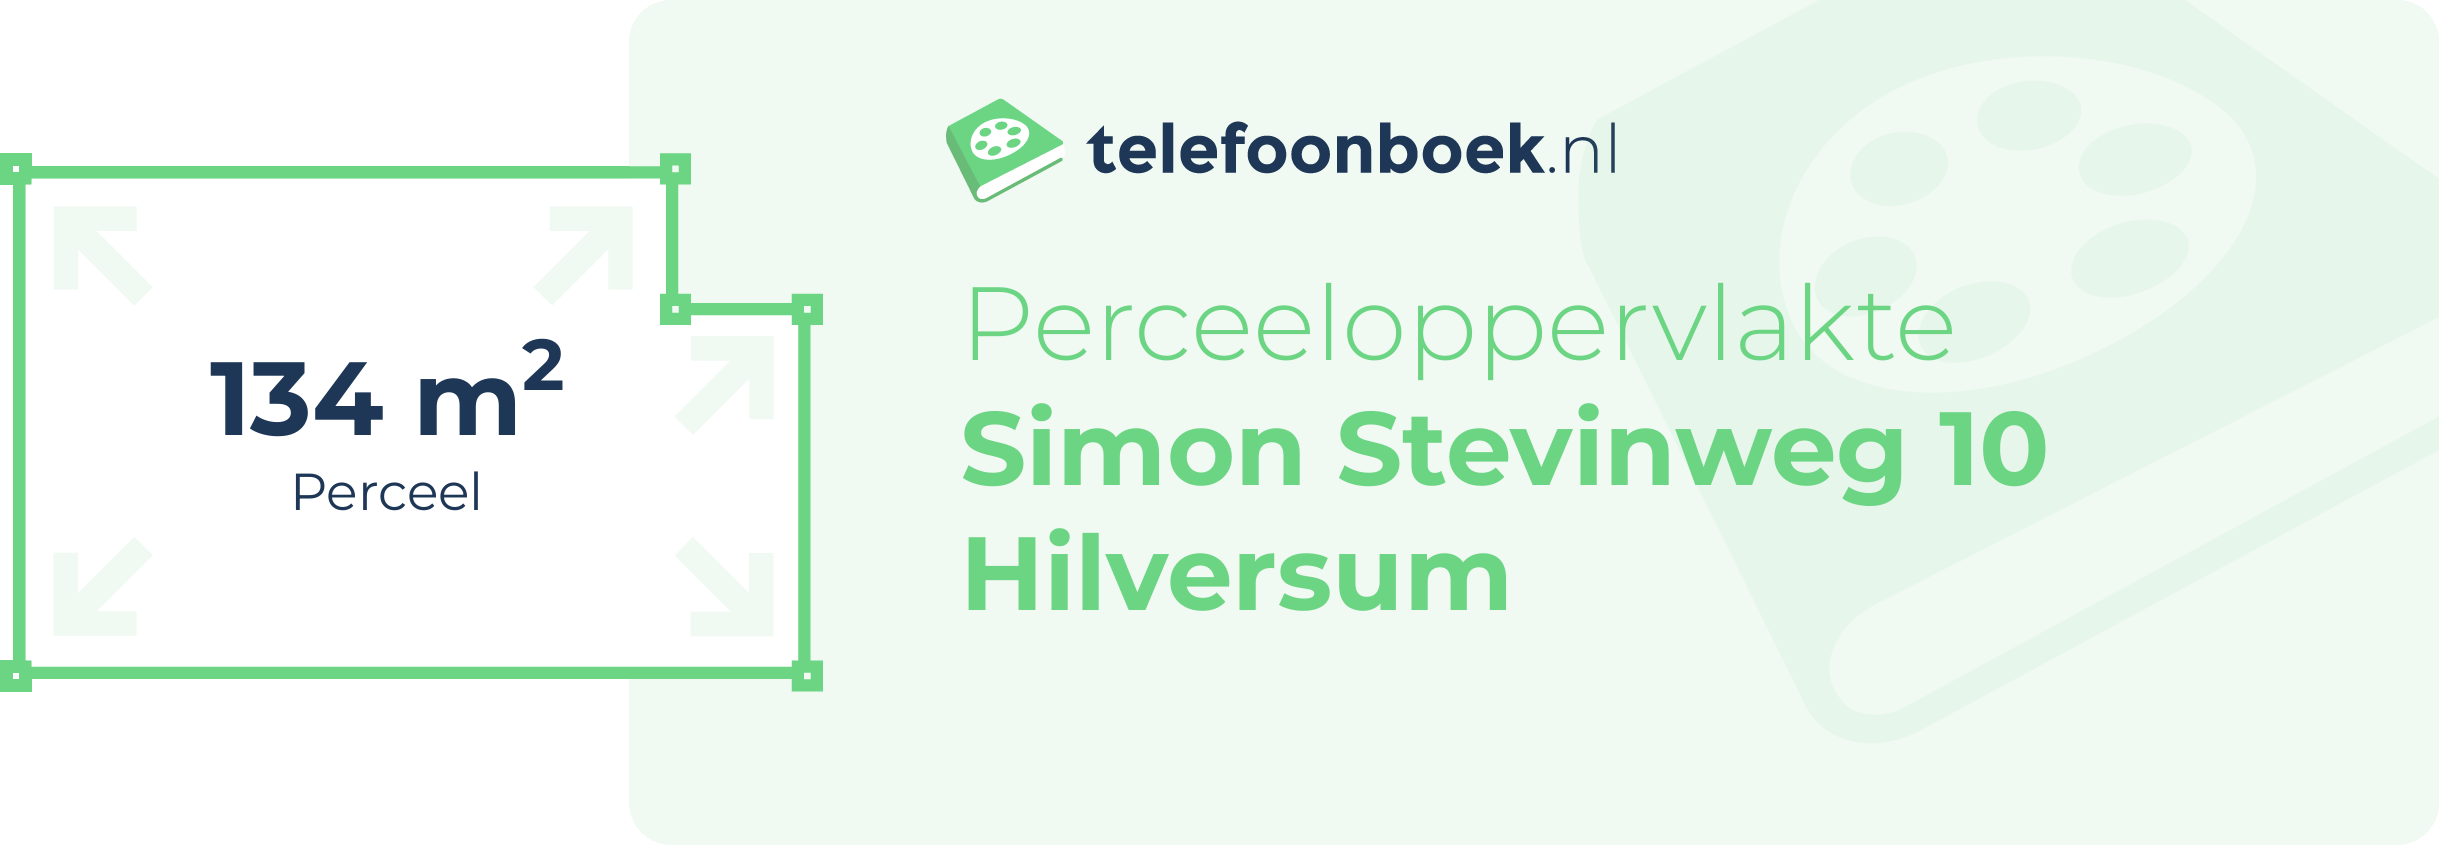 Perceeloppervlakte Simon Stevinweg 10 Hilversum